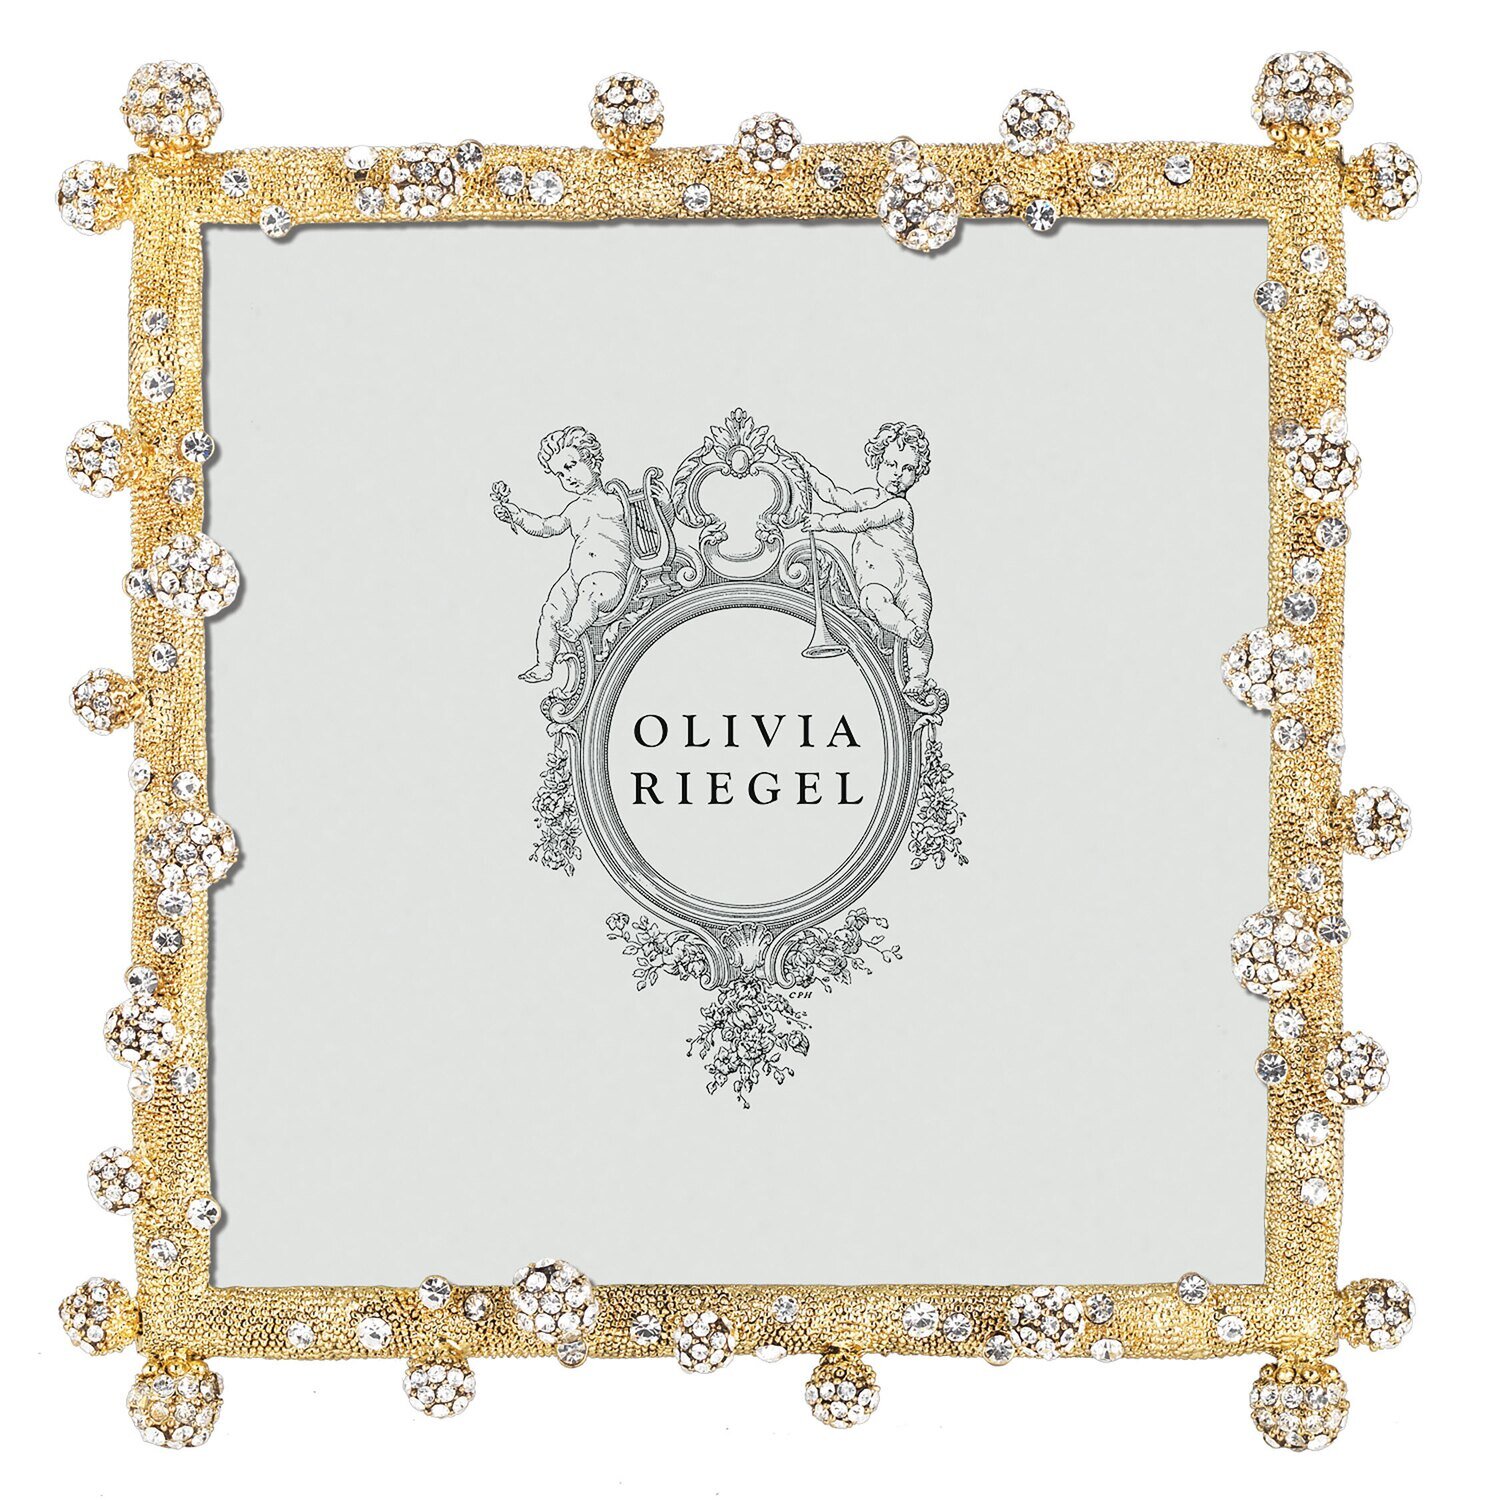 Olivia Riegel Gold Pav Odyssey 5 x 5 Inch Picture Frame RT0152